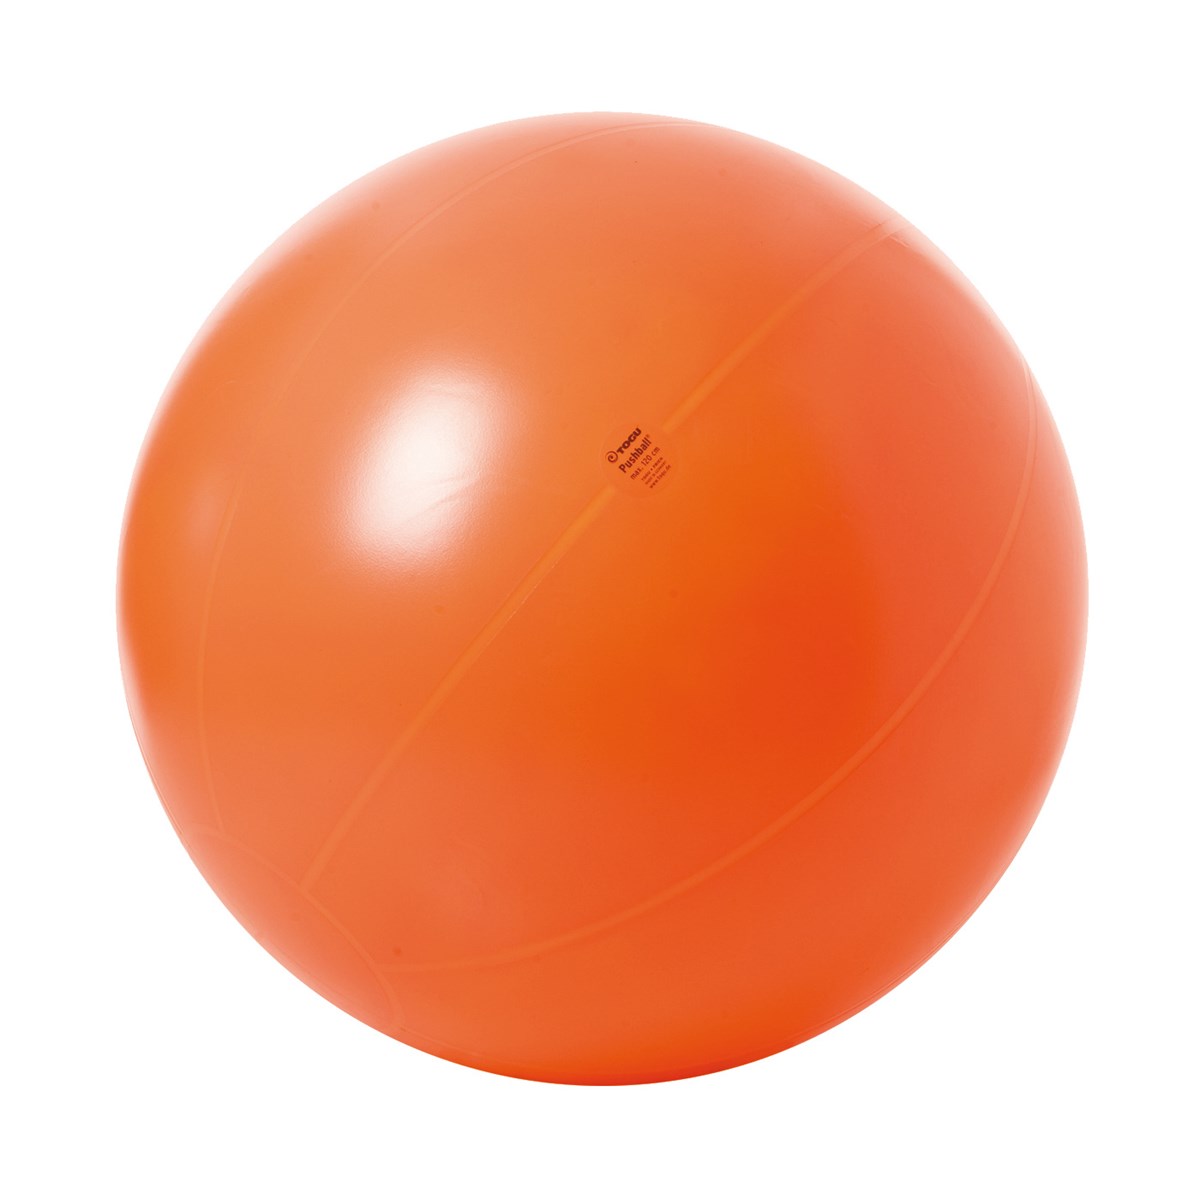 Max ball. Мяч гимнастический большой Physio Gymnic 120 см. Togu мяч гимнастический 65 см. Массажный реабилитационный мяч BMB-55. Мяч для массажа оранжевый.